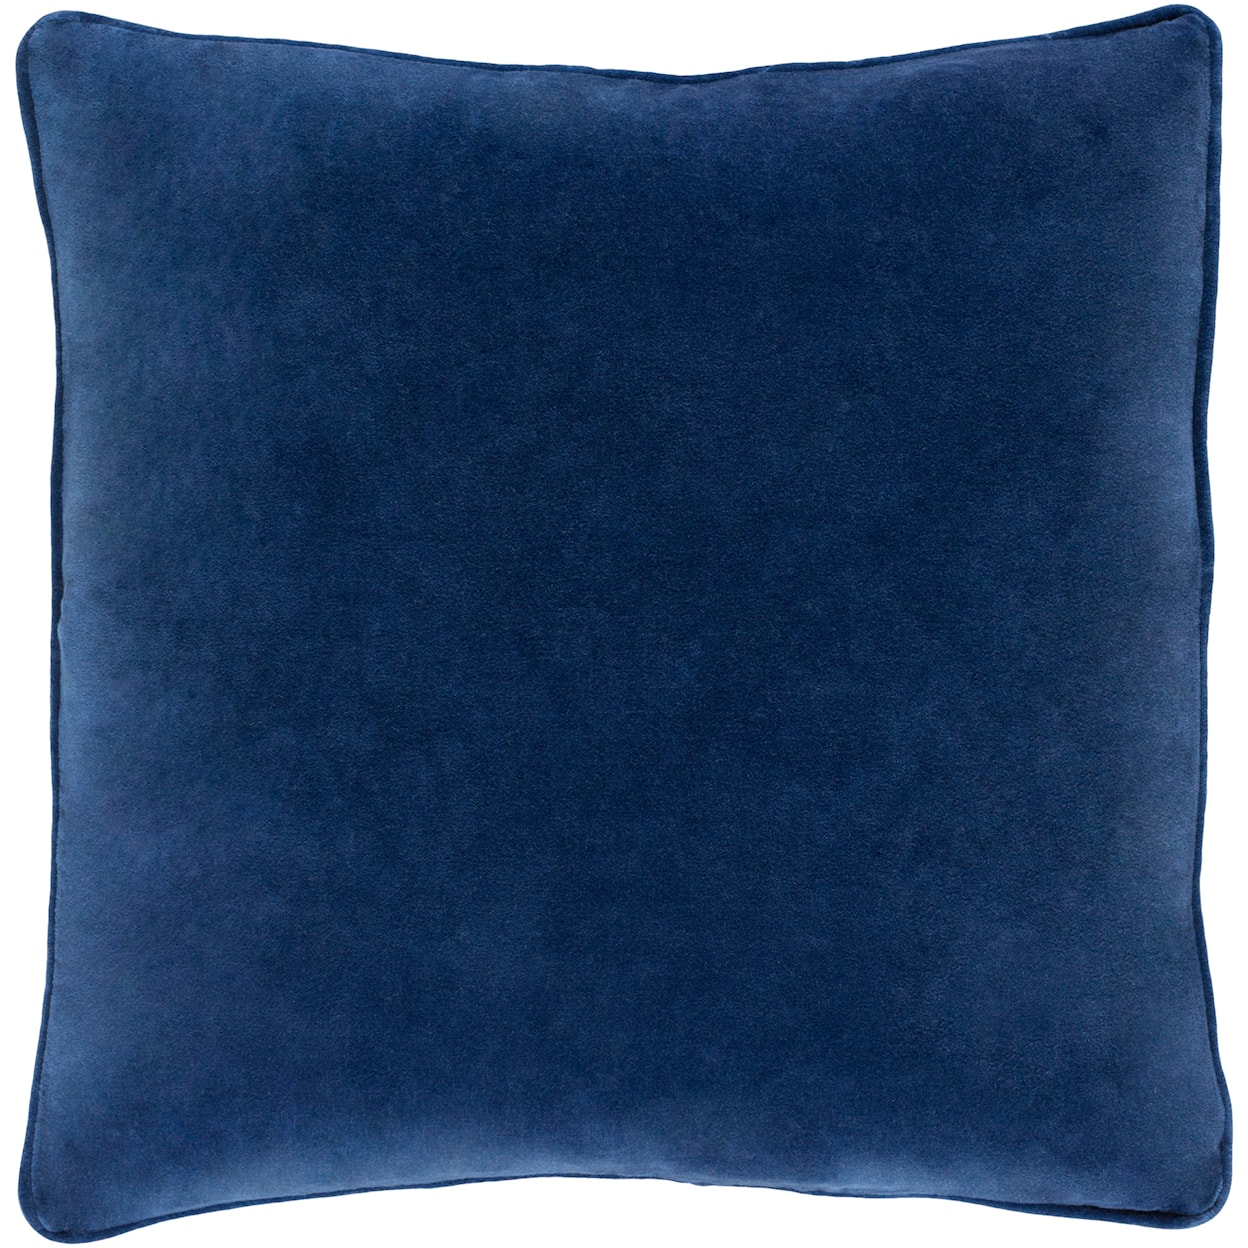 Surya Rugs Safflower Pillow Kit